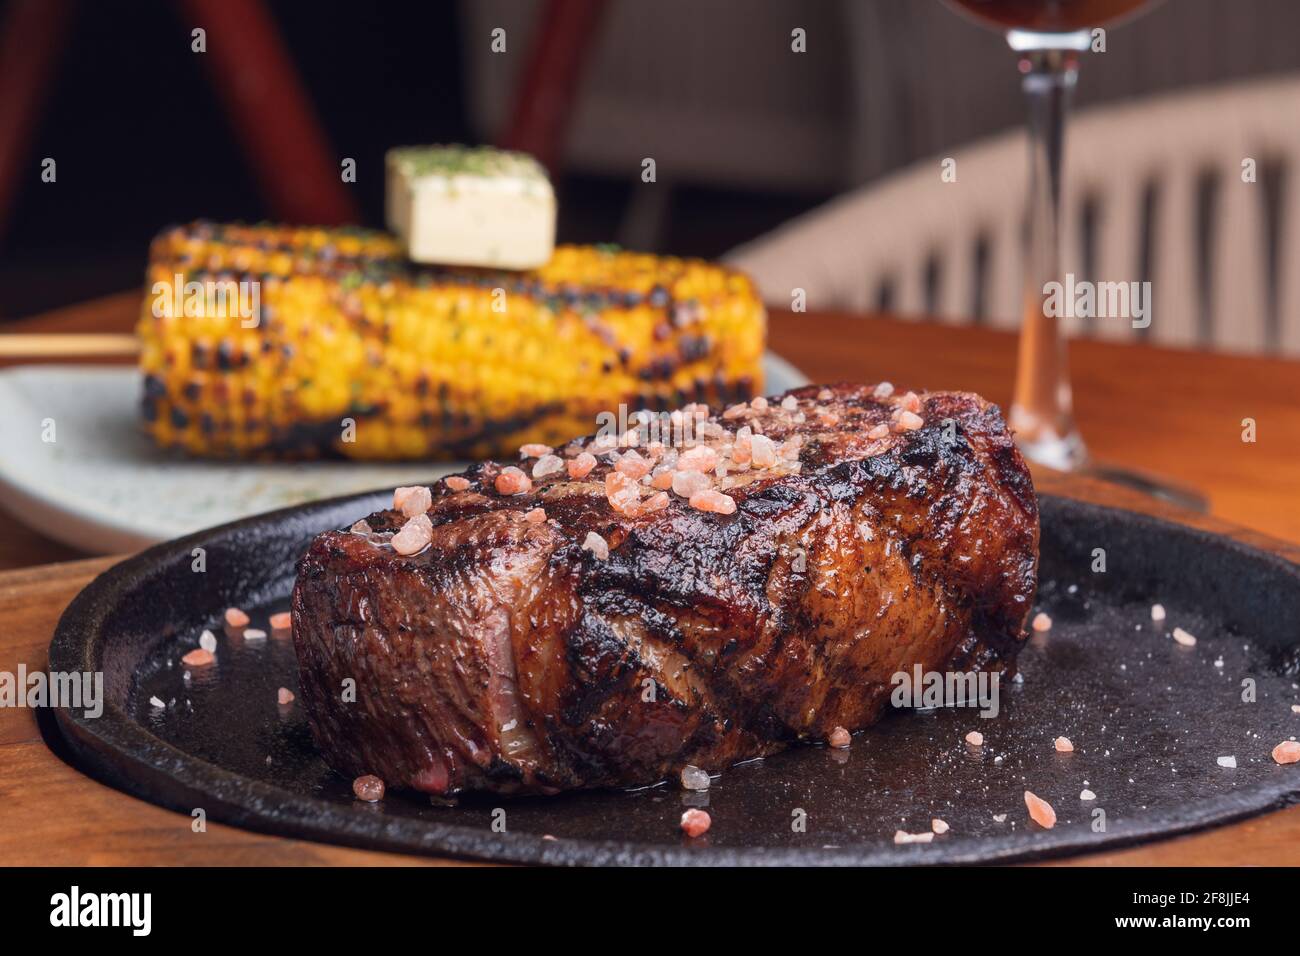 Steak grillé et garniture de maïs jaune sur une table en bois. Cuisine gastronomique. Banque D'Images